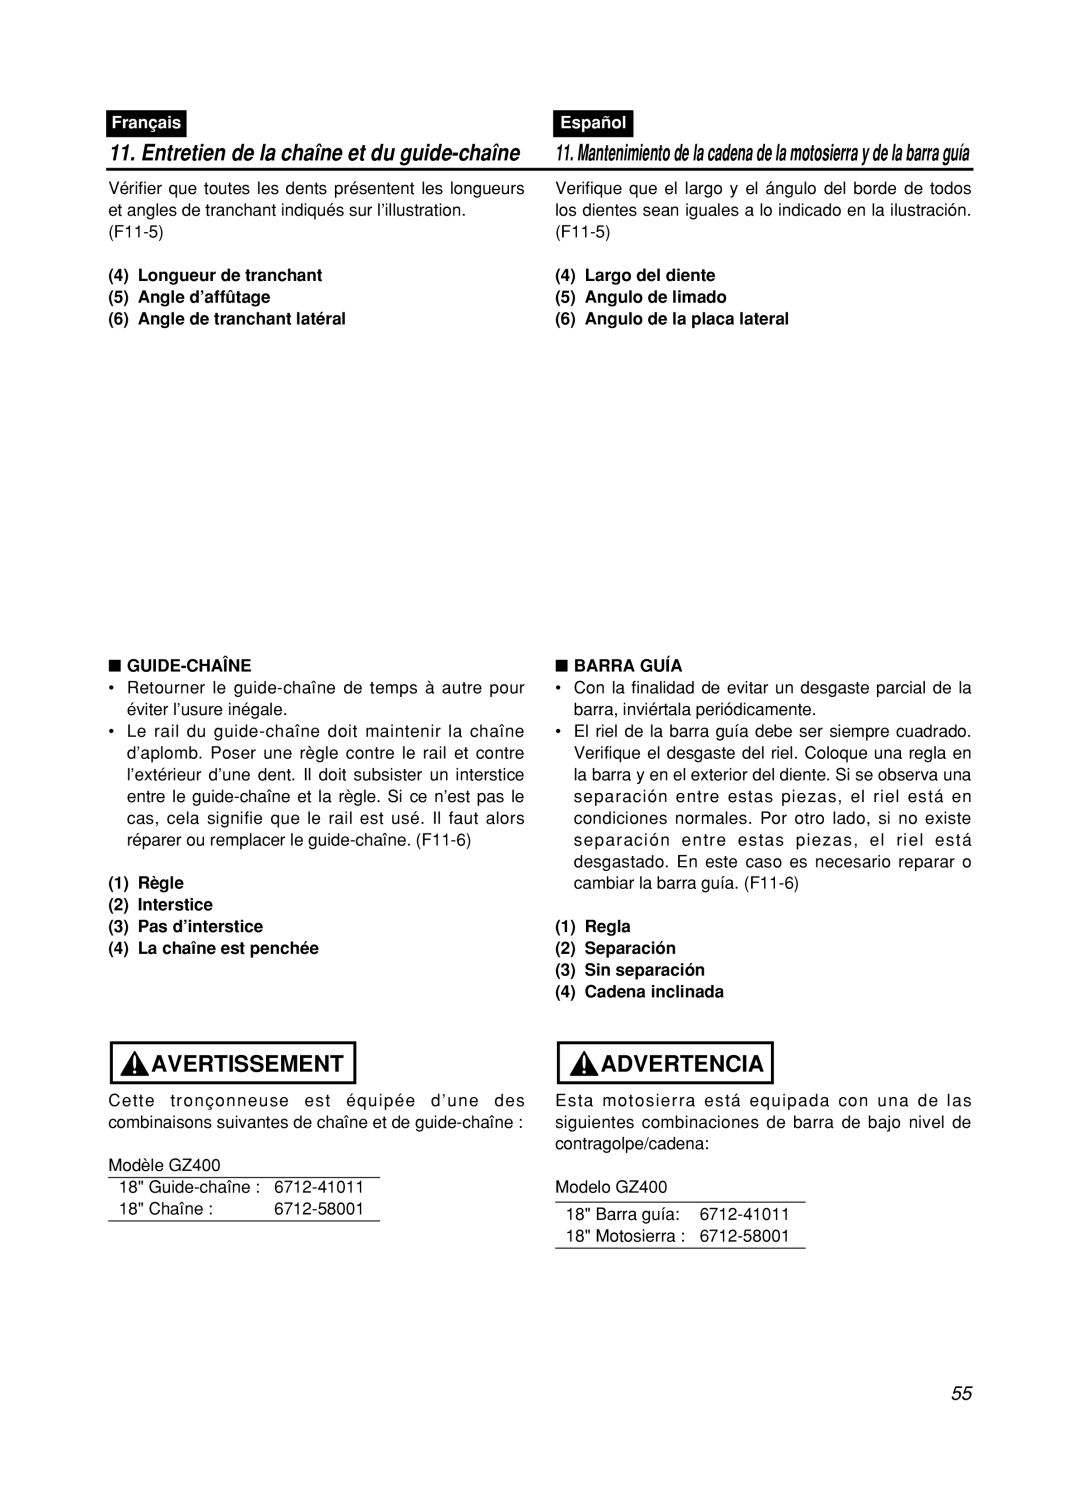 Zenoah GZ400 manual Avertissement, Advertencia, Entretien de la chaîne et du guide-chaîne, Français, Español 